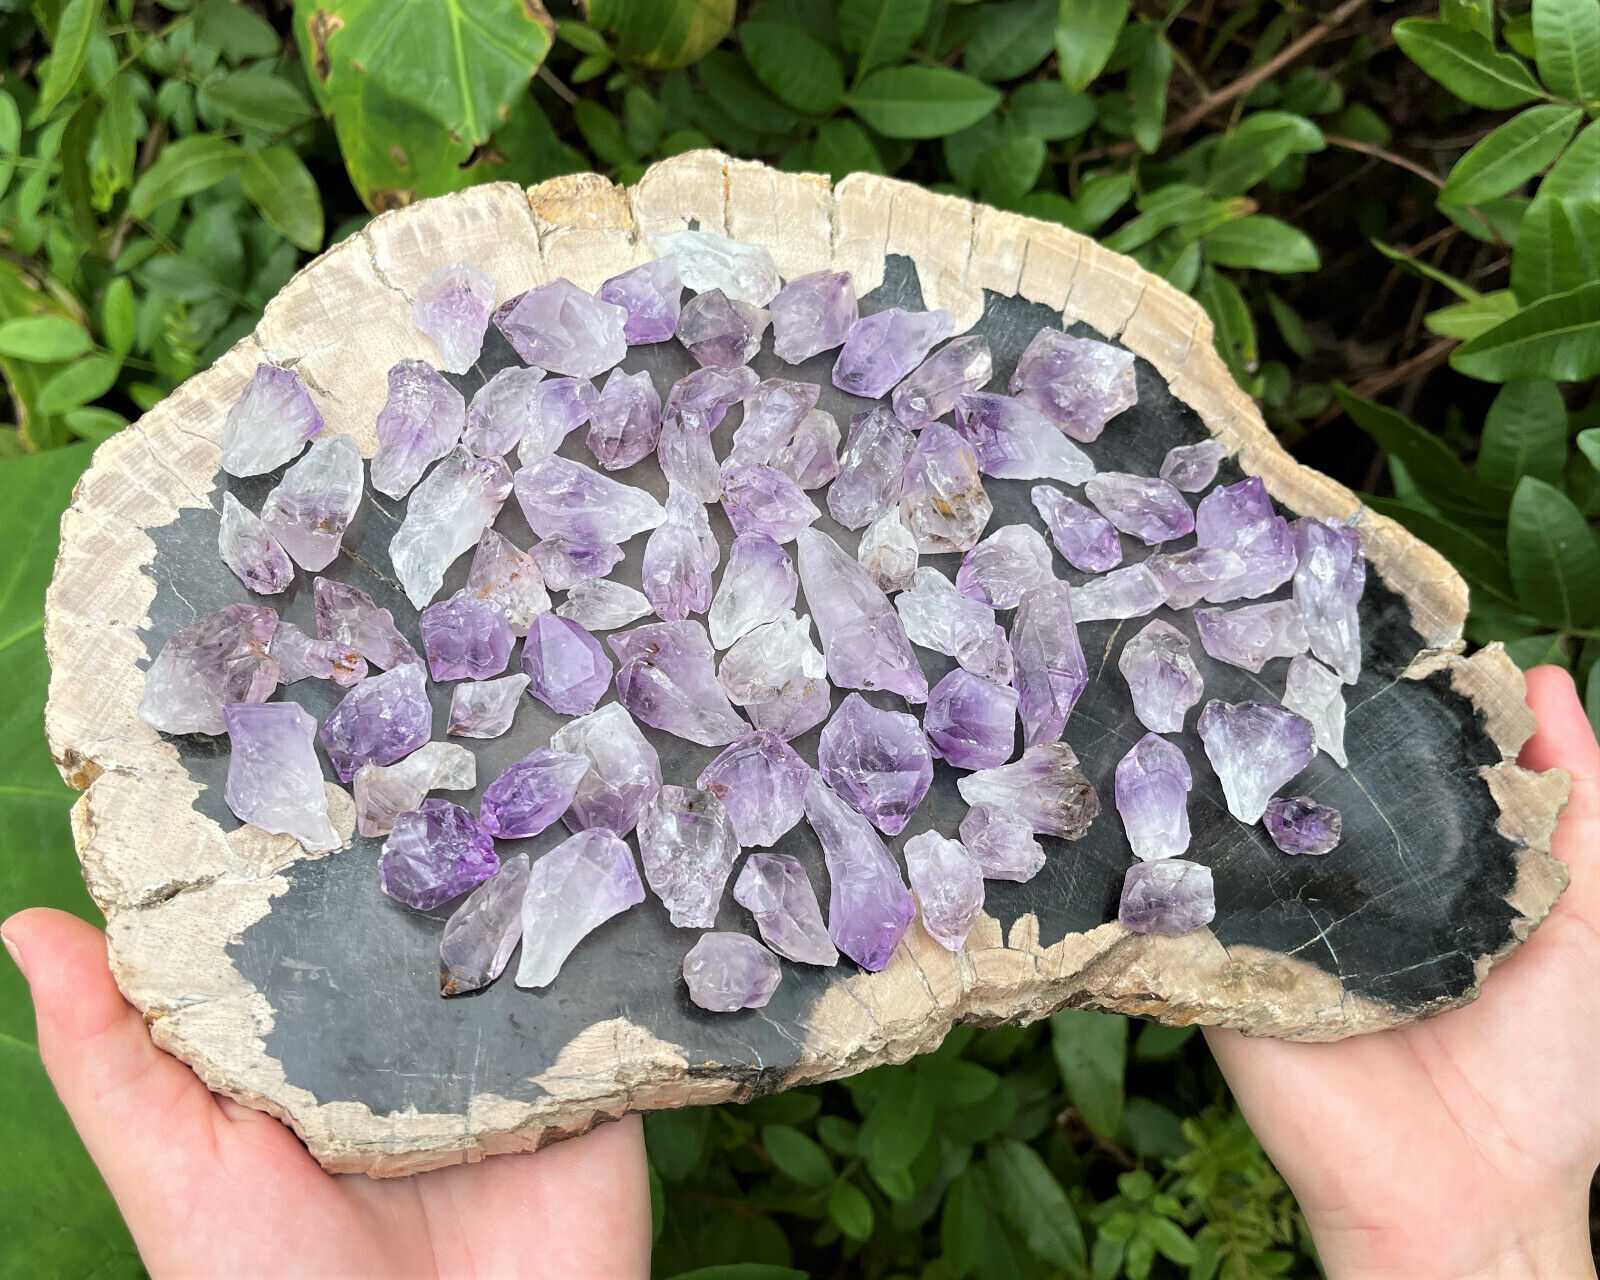 1/2 lb Lot Natural Purple Amethyst Crystal Quartz Points & Pieces (8 oz) 